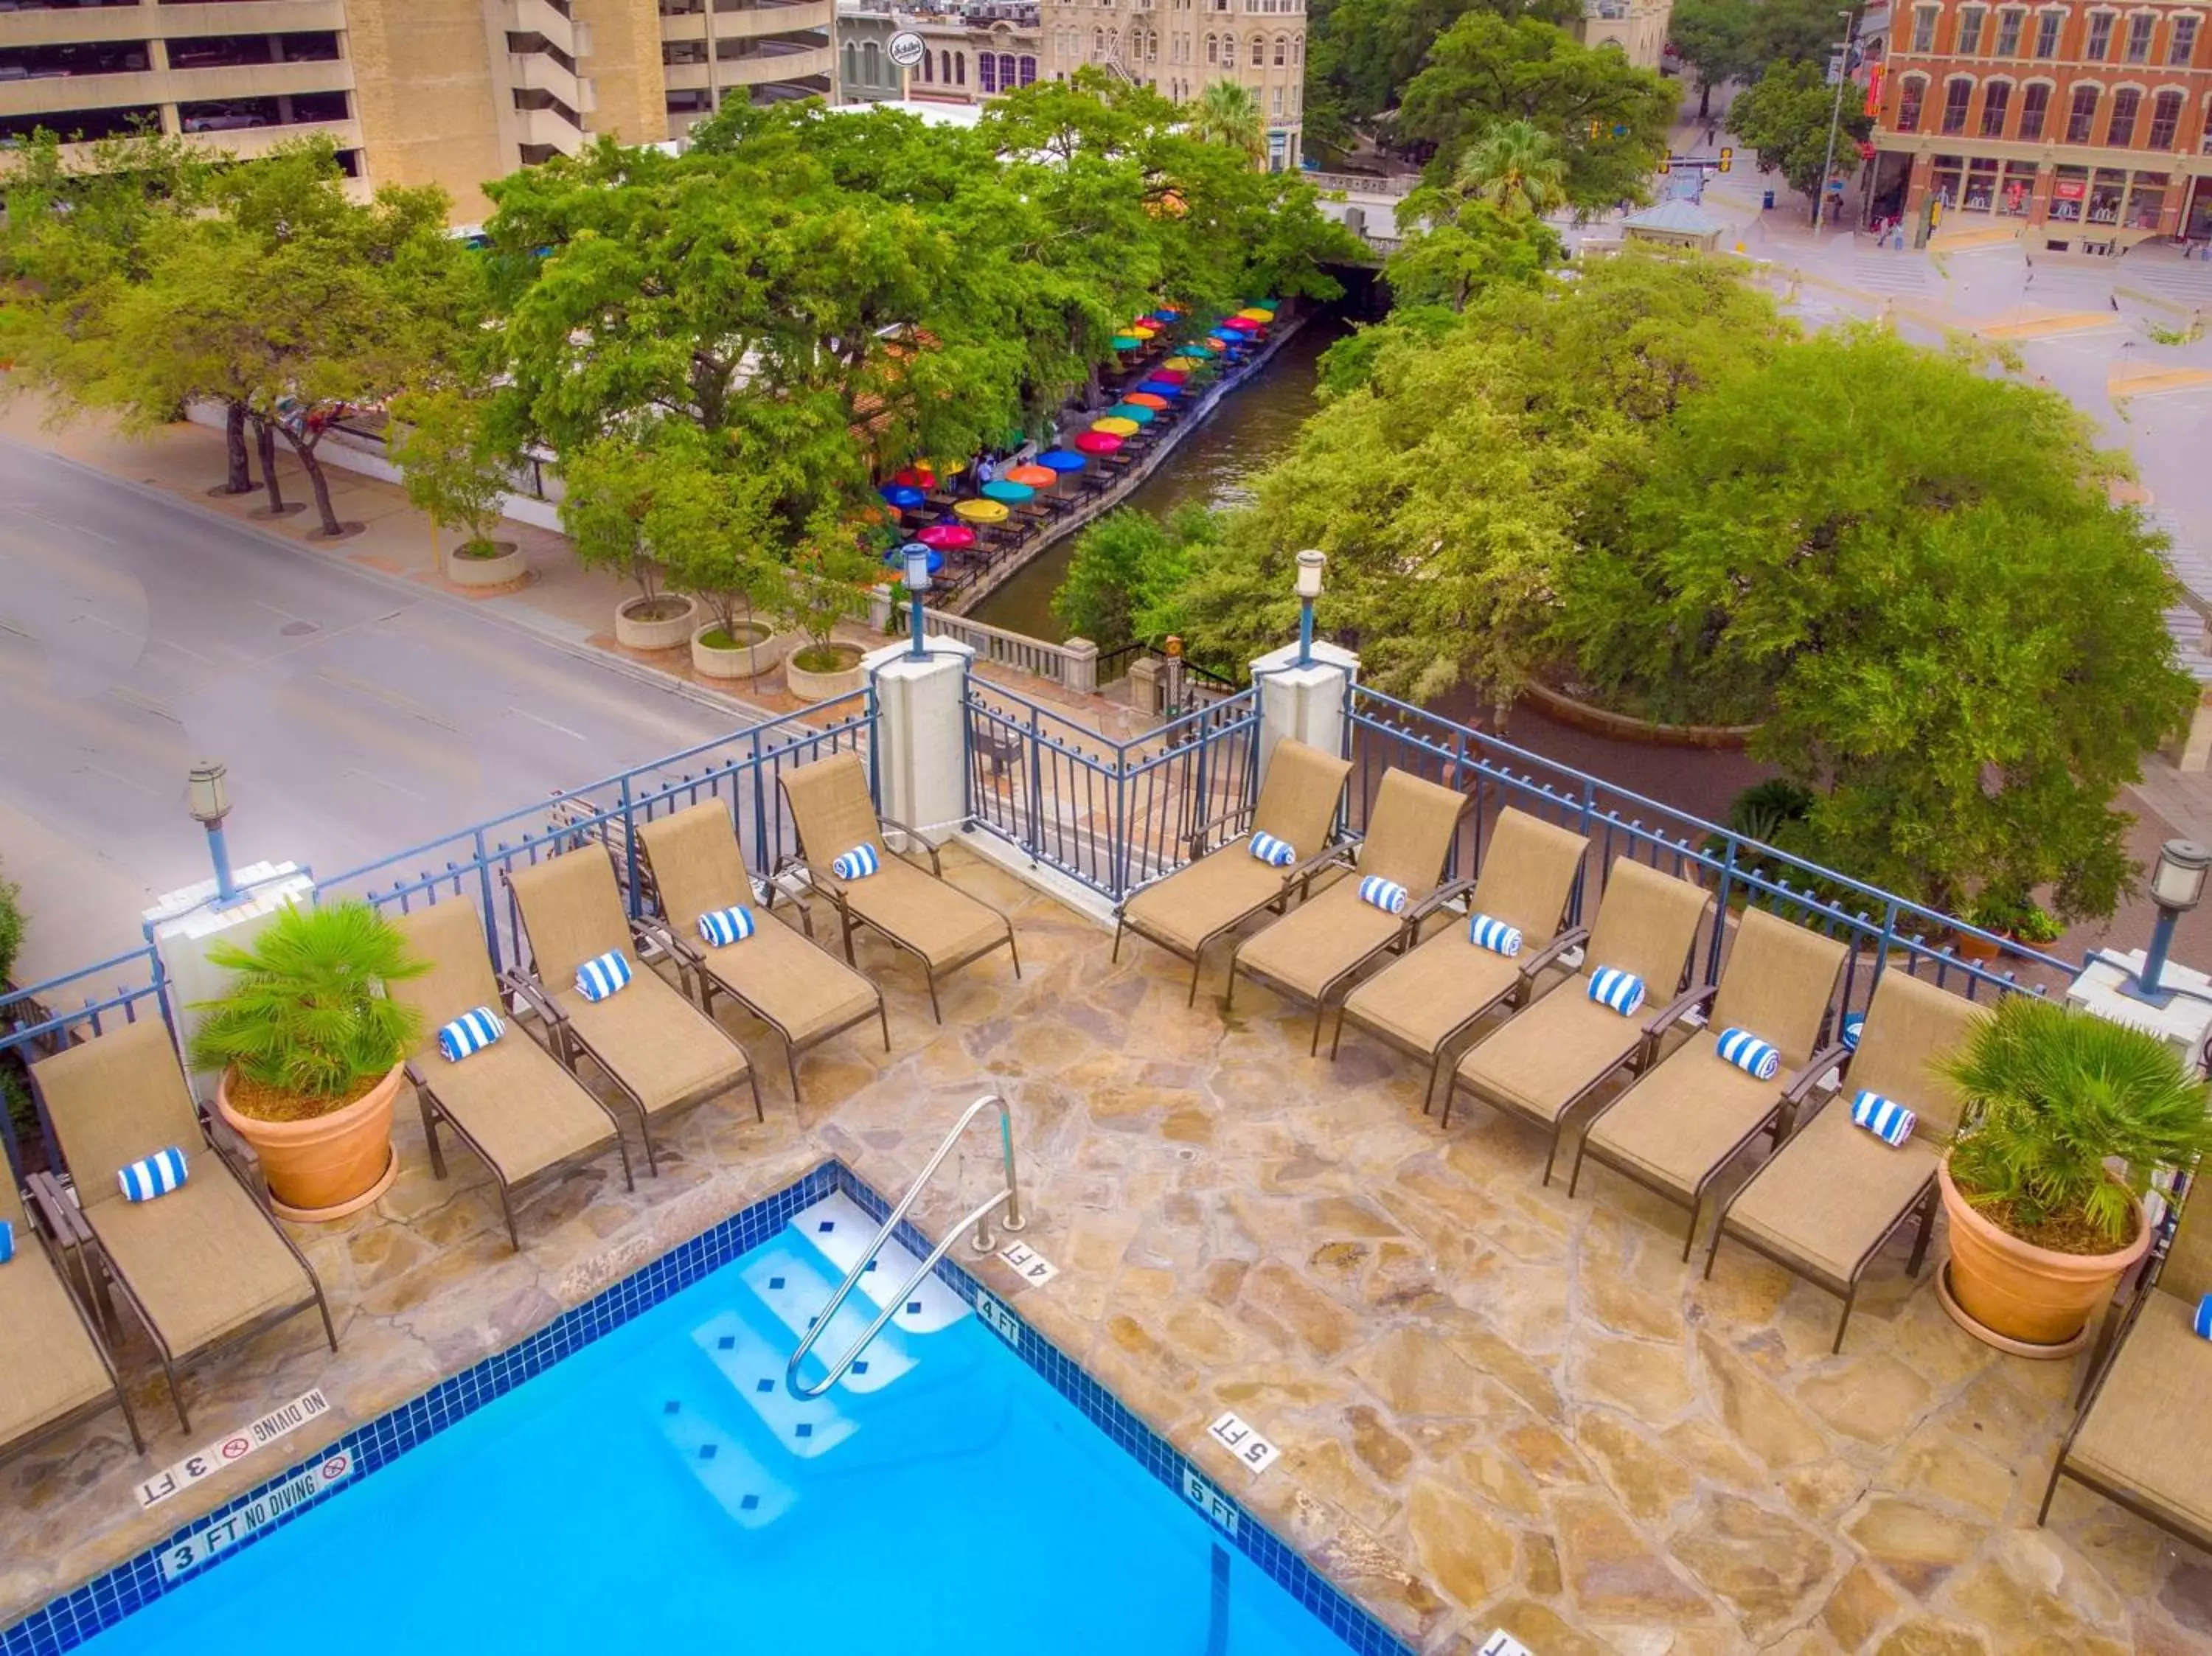 Property building, Pool View in Hilton Palacio del Rio